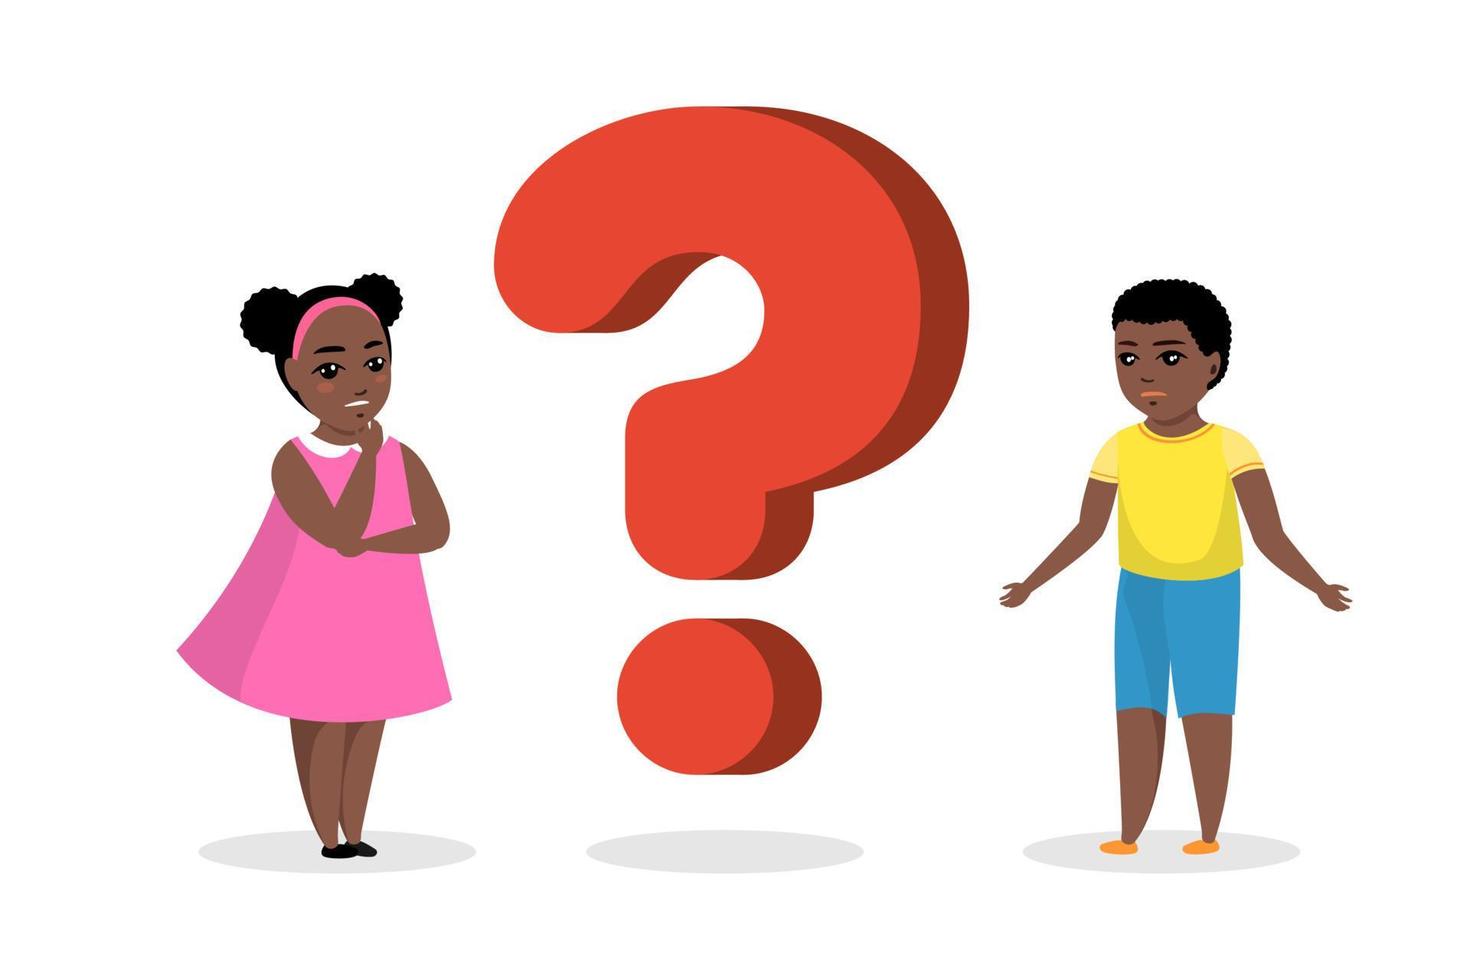 zwarte Afro-Amerikaanse jongen en meisje staan in de buurt van een groot vraagteken. concept van het verkrijgen van kennis door nadenkende jonge mensen. nieuwsgierige kinderen stellen vragen en zoeken naar antwoorden. vector illustratie